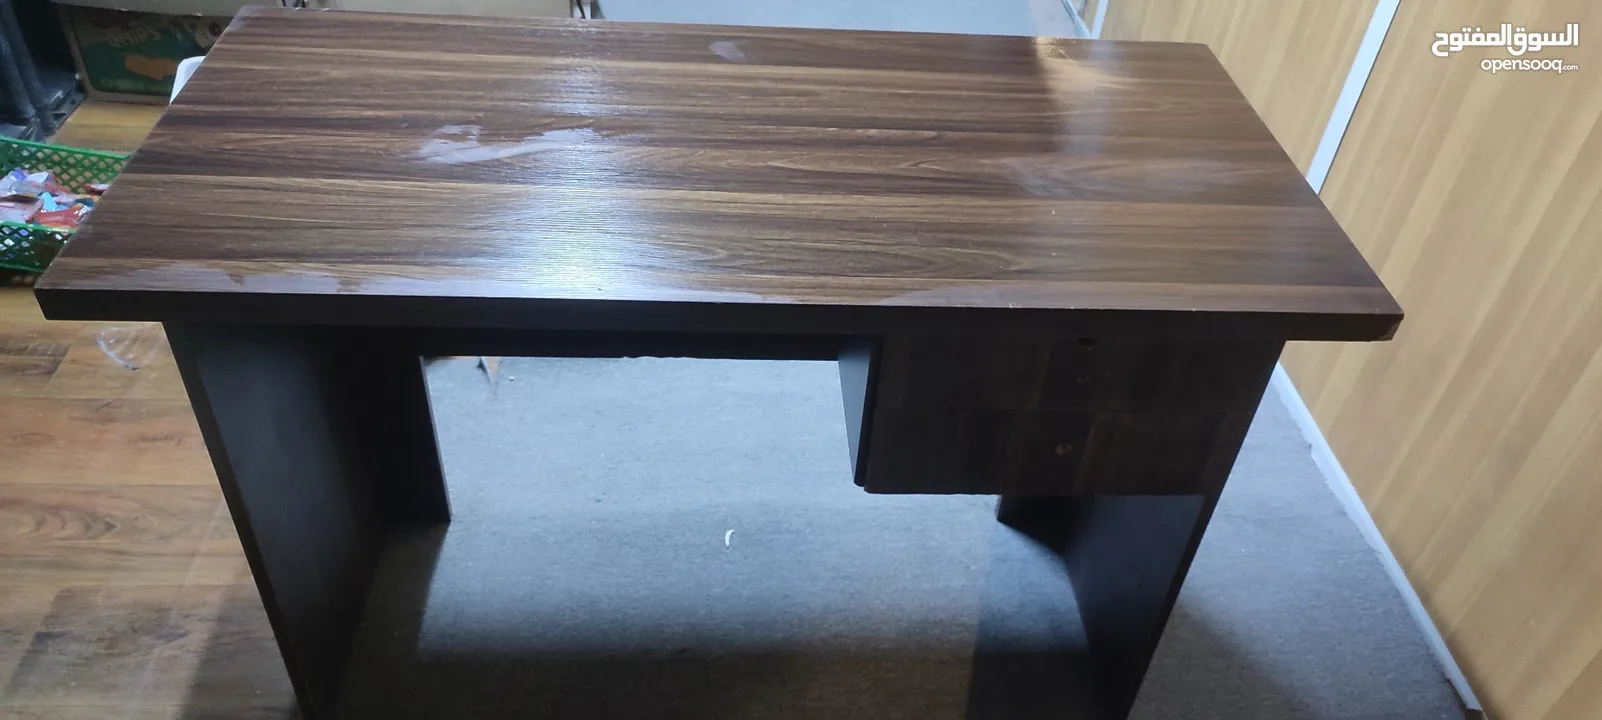 طاولة مكتب خشب الآتية الثقيل مع كرسي مكتب ورفوف بلاستيكية نوع الاصيل